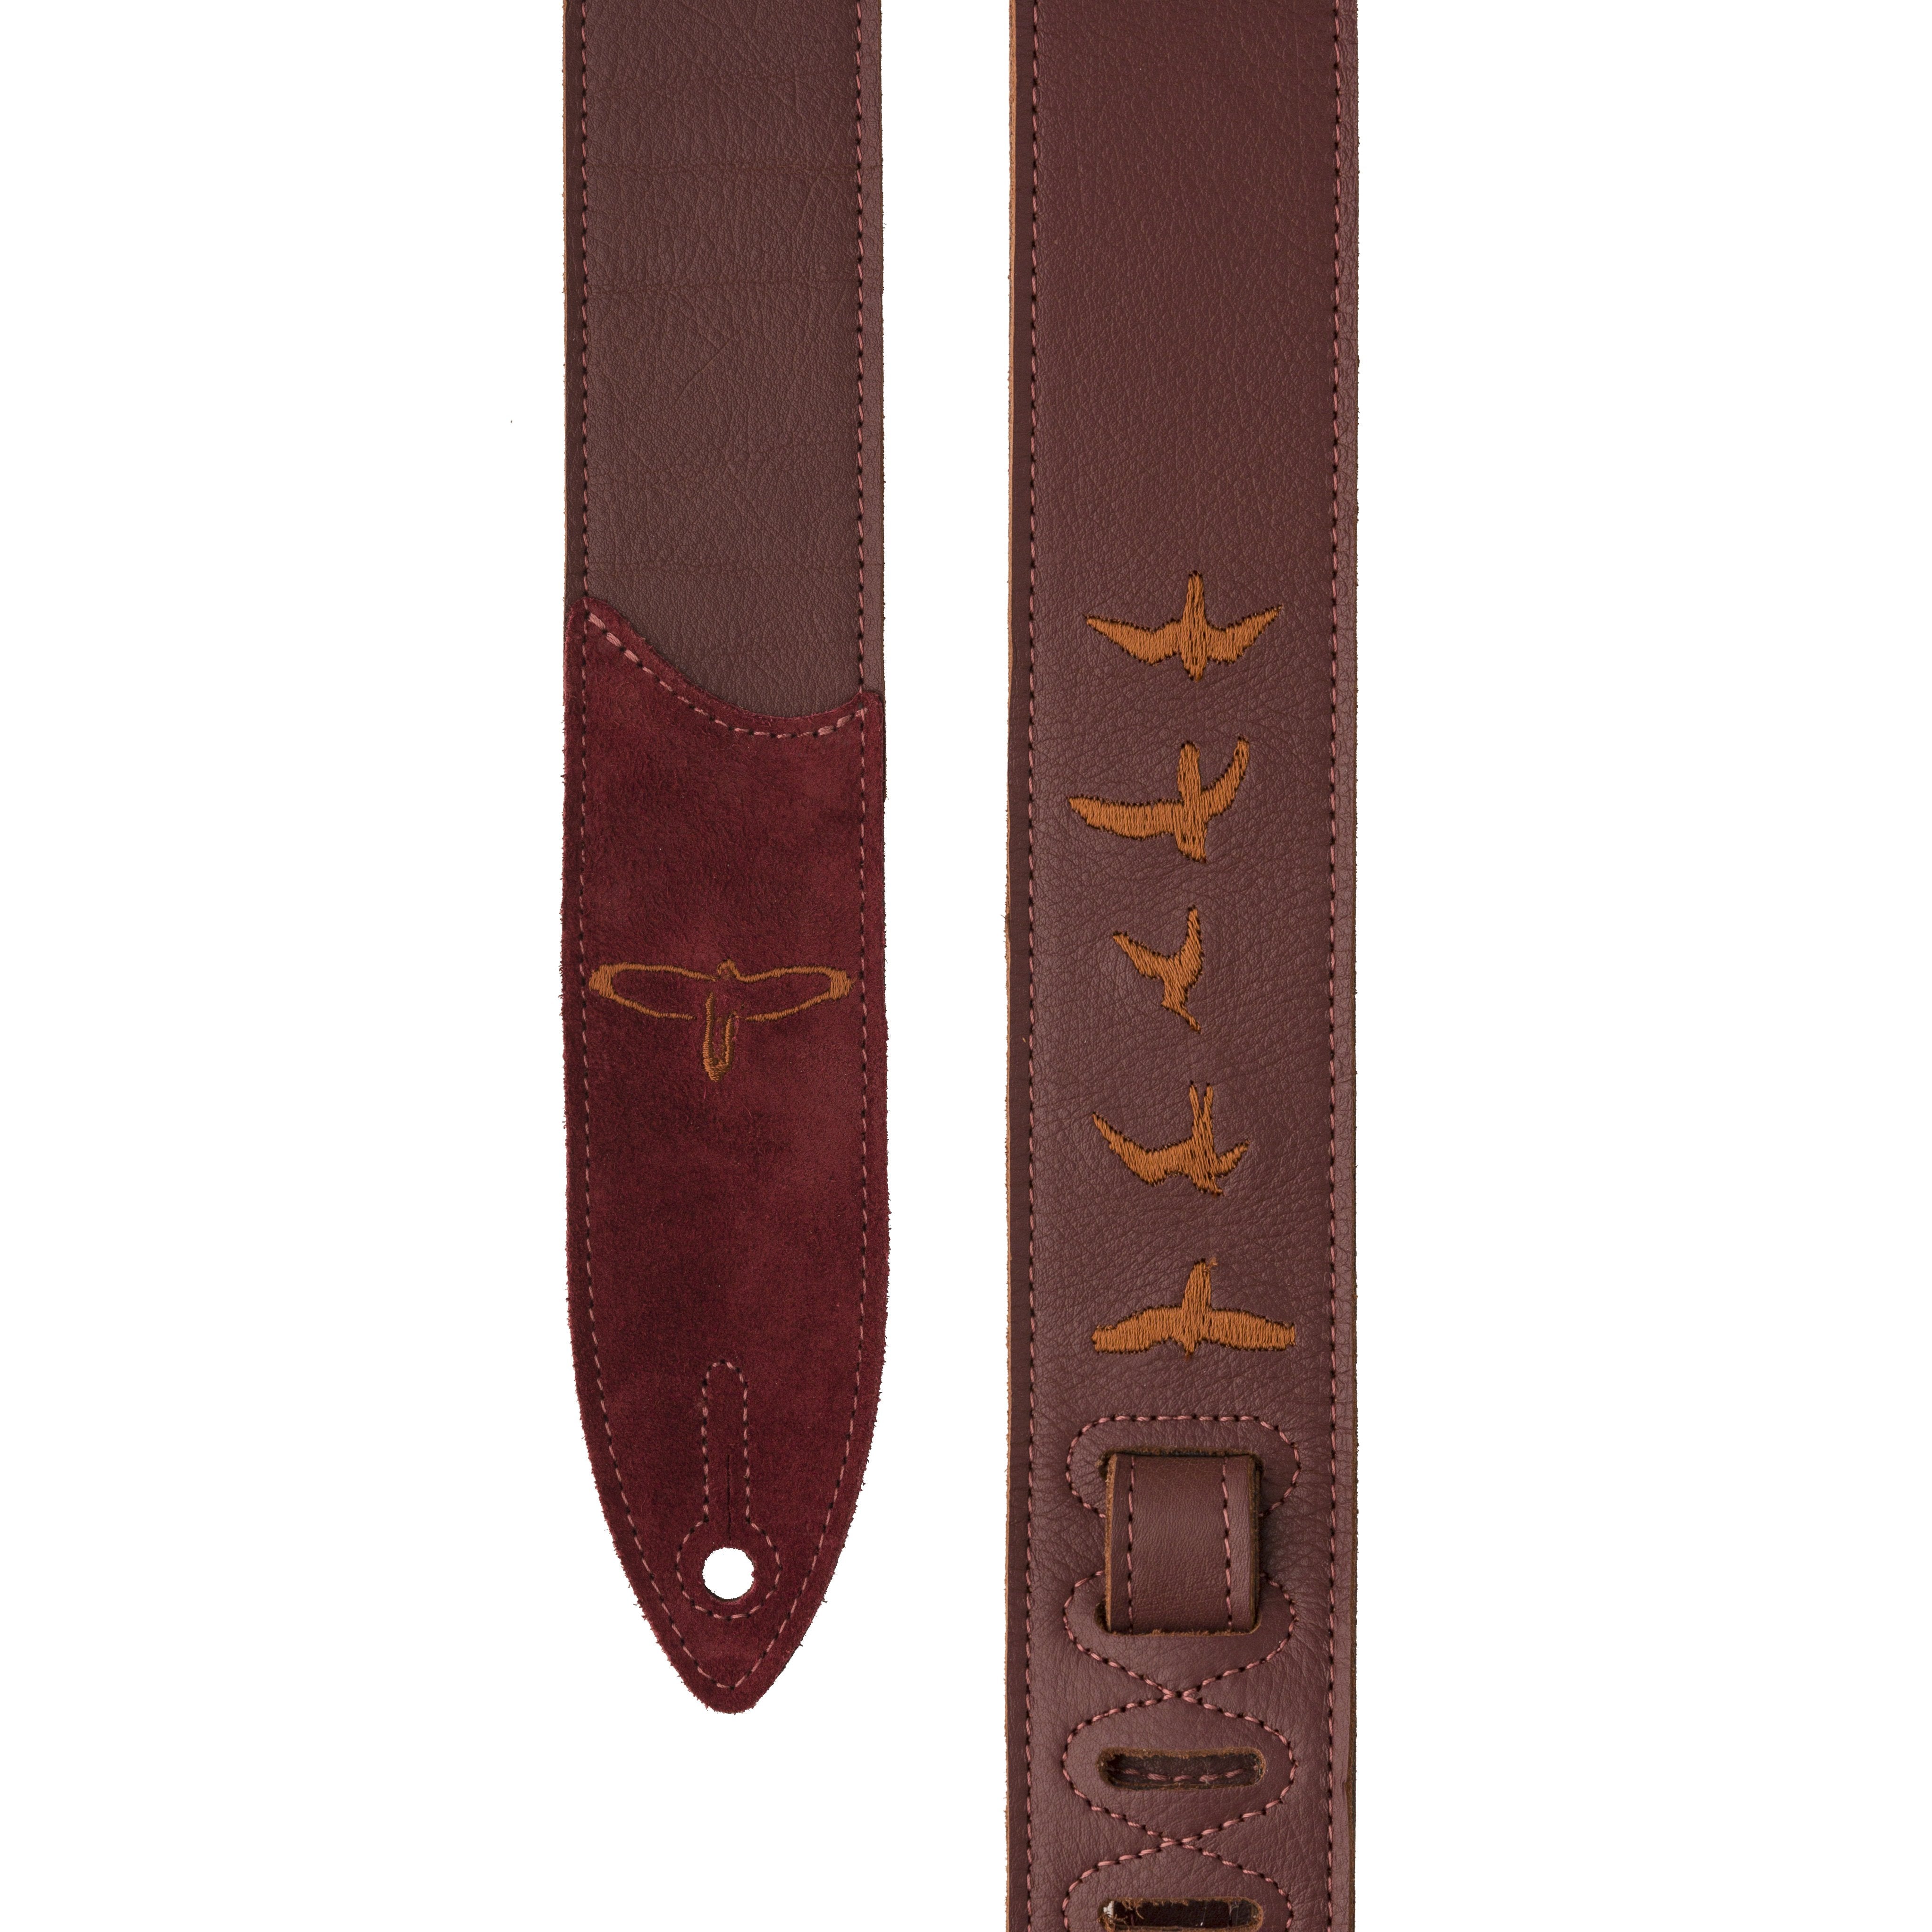 PRS Premium Leather Strap Birds Emroidery Burgundy ACC-3167 - HIENDGUITAR   PRS straps